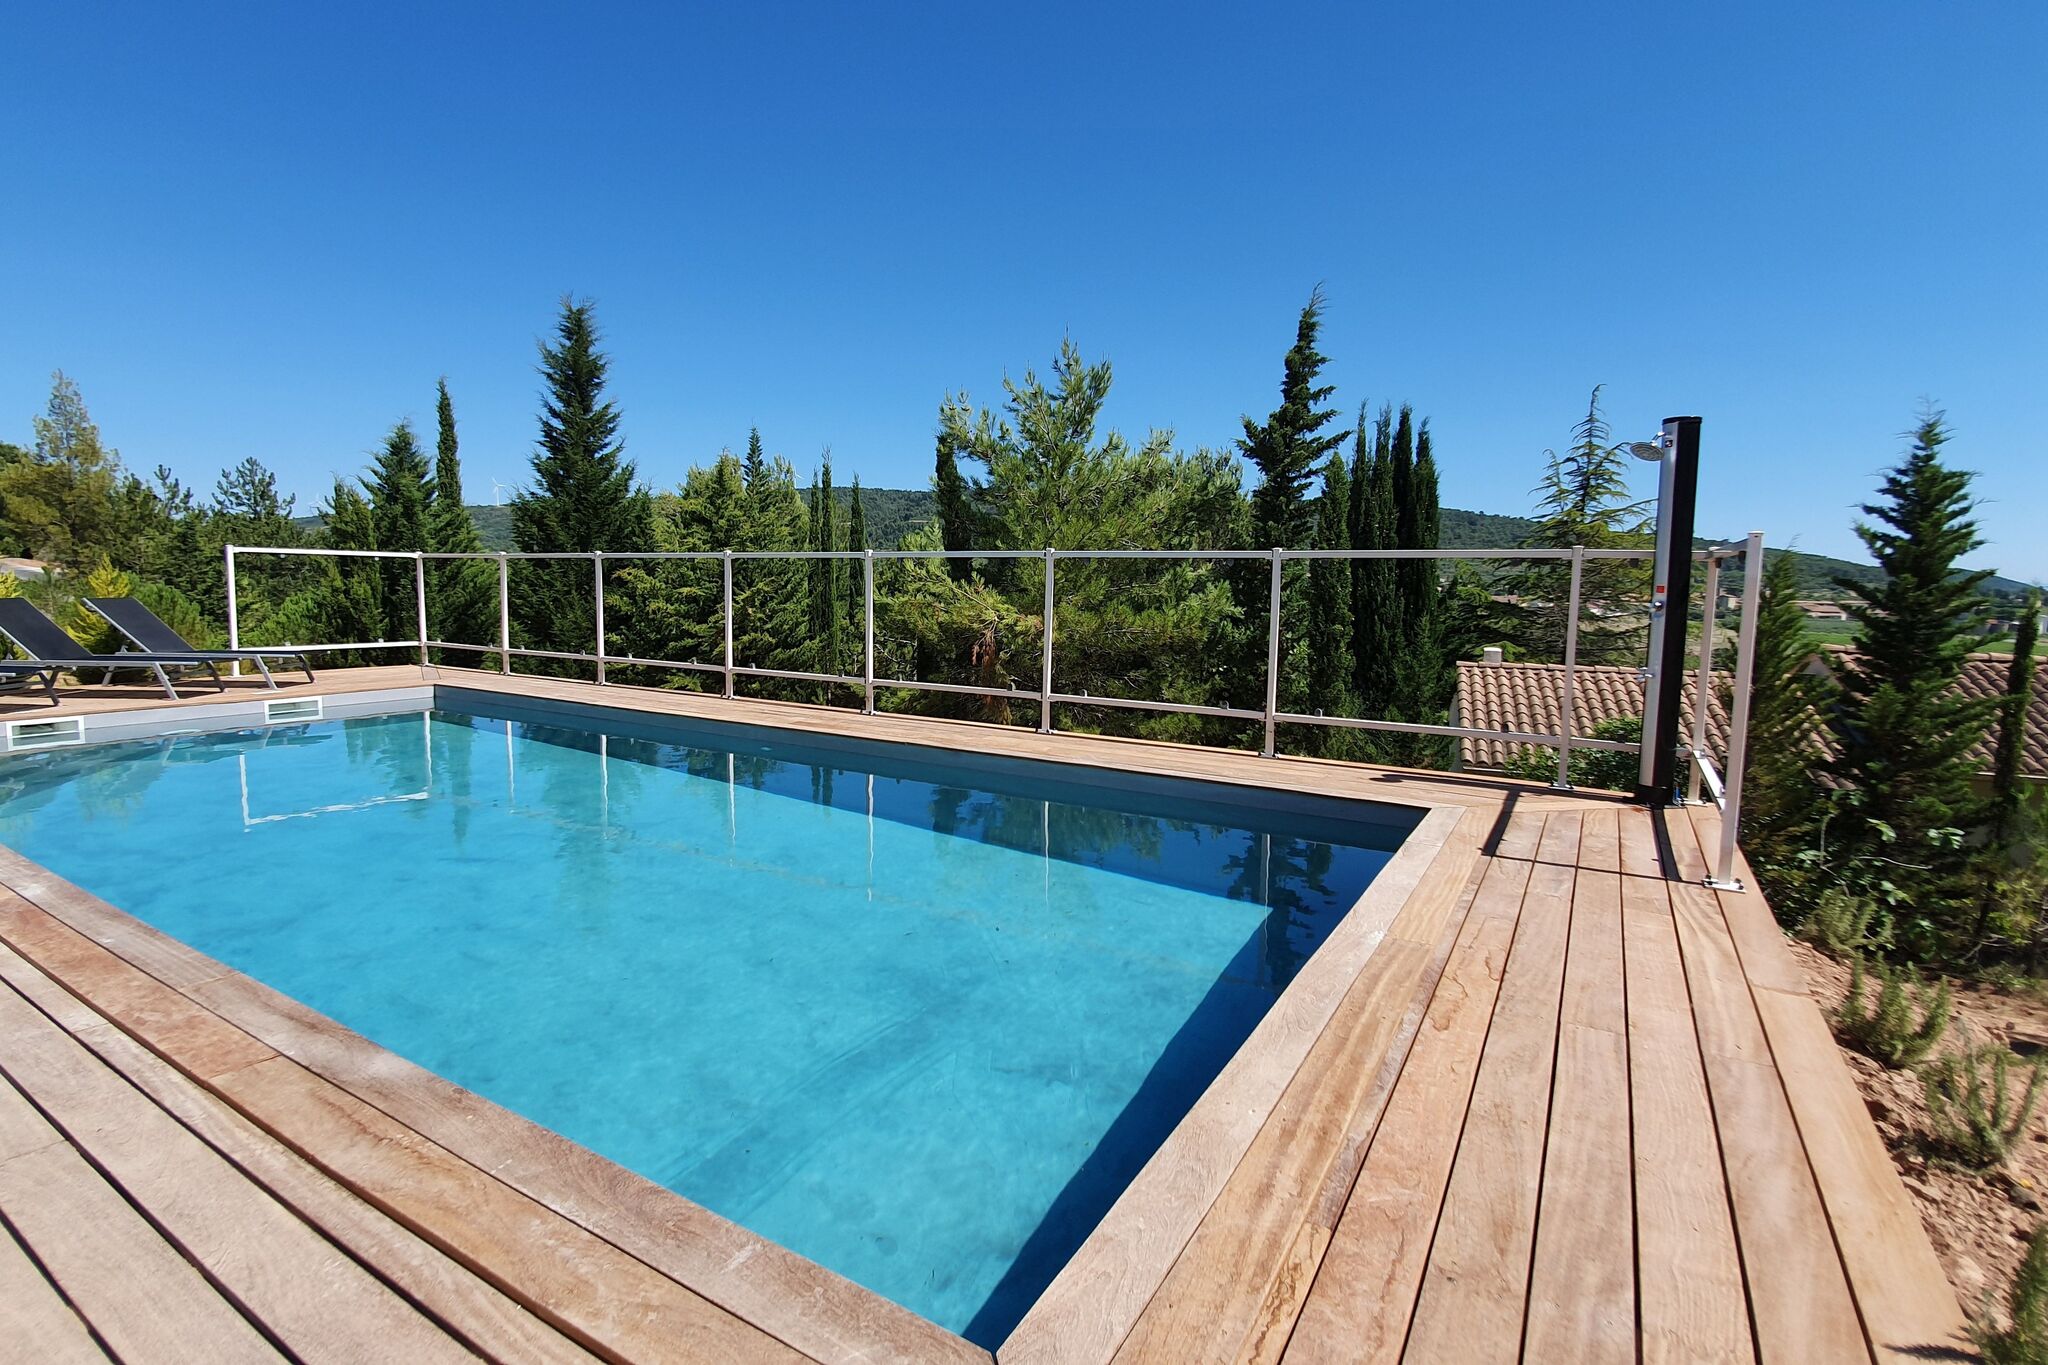 Stijlvolle villa in Beaufort met privé zwembad, gehele woning voorzien van airco. Netflix aanwezig